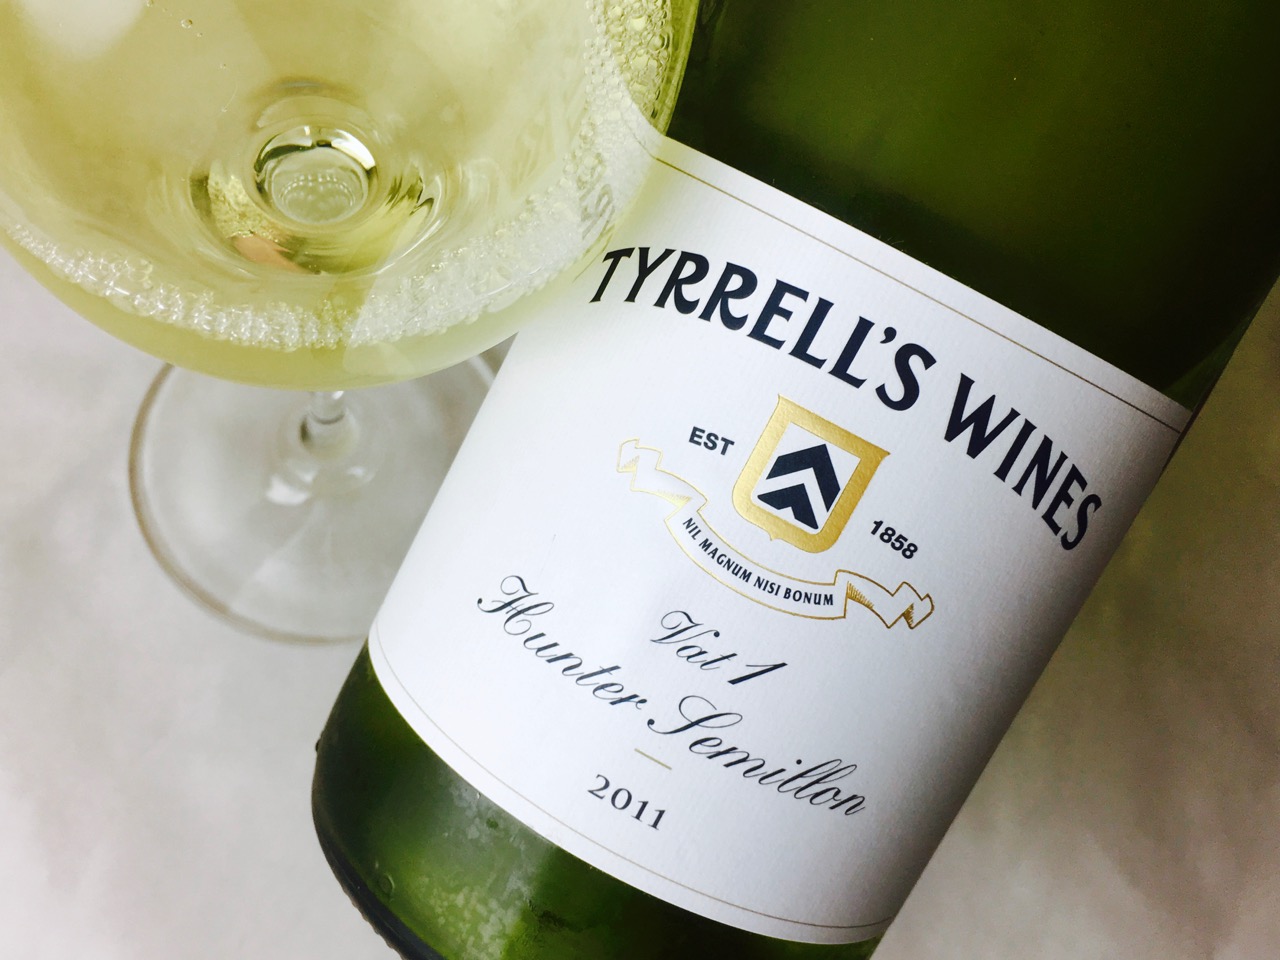 2011 Tyrrell’s Wines Sémillon Vat 1 Hunter Valley